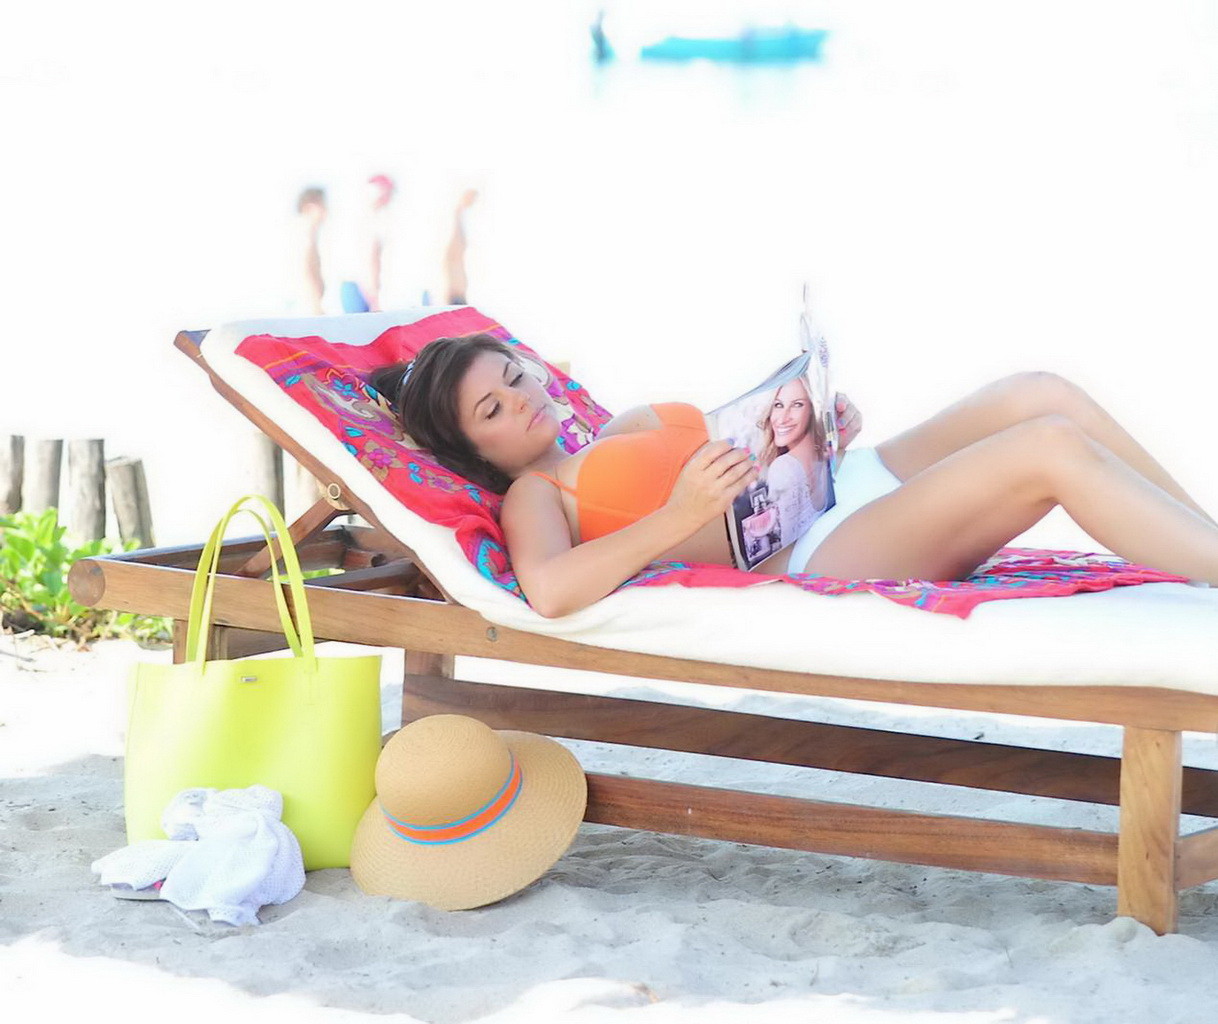 Tiffani Thiessen wearing orange bikini top and white panties on the beach in Mex #75205400